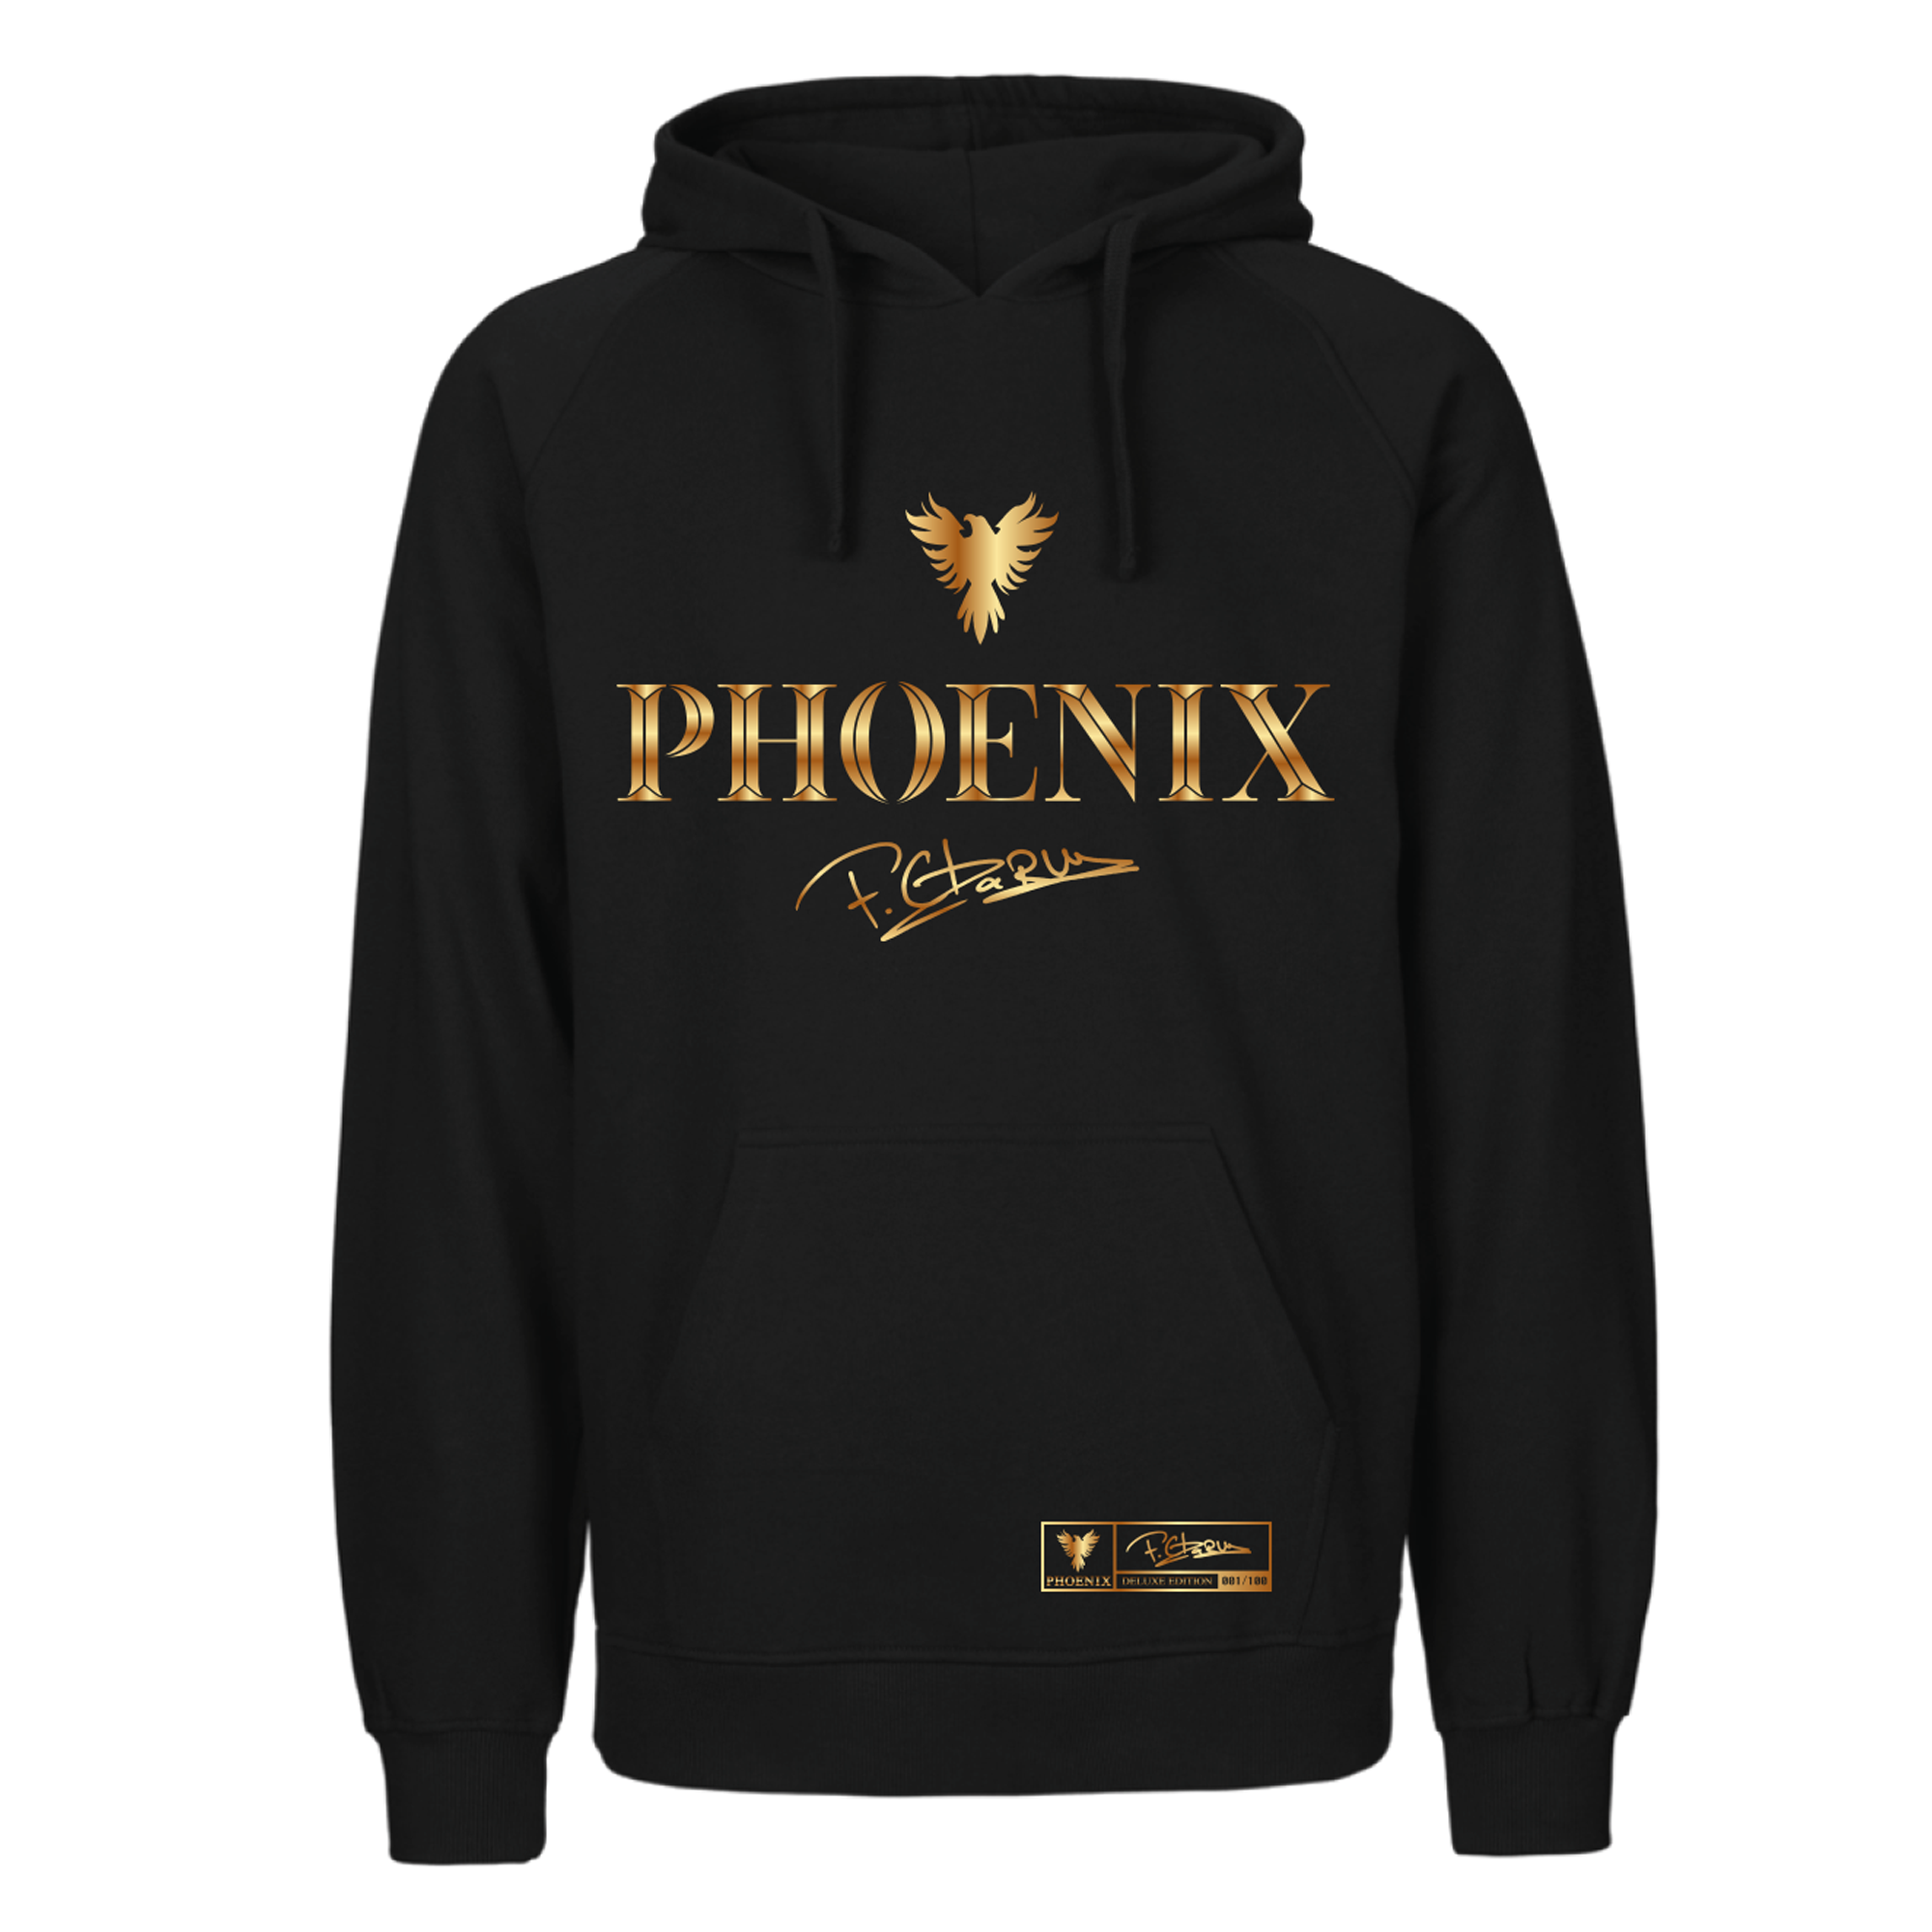 Pack Phoenix Deluxe